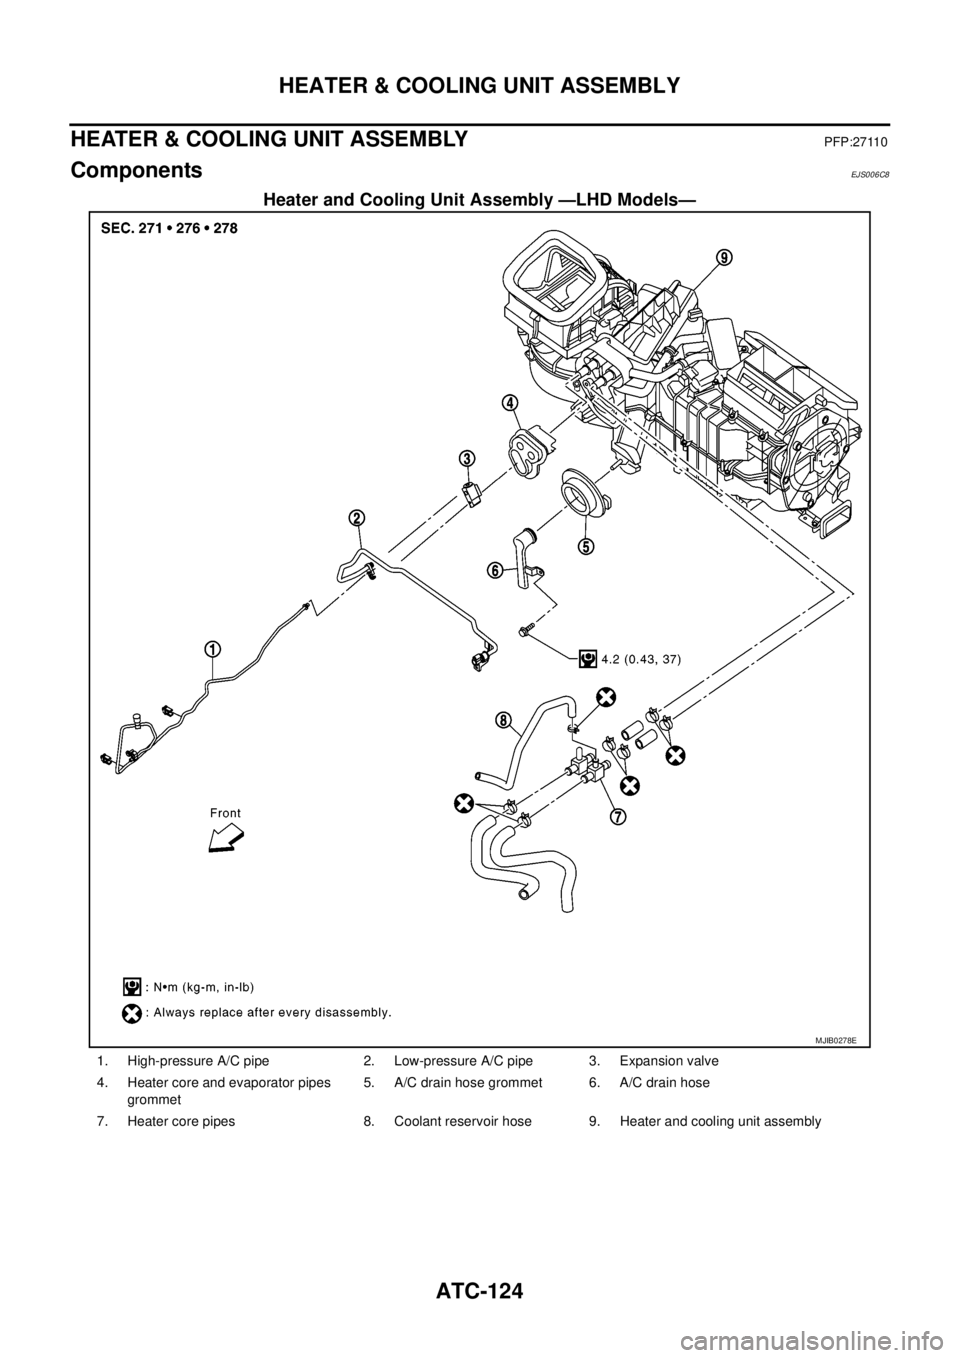 NISSAN NAVARA 2005  Repair Workshop Manual ATC-124
HEATER & COOLING UNIT ASSEMBLY
HEATER & COOLING UNIT ASSEMBLY
PFP:27110
ComponentsEJS006C8
Heater and Cooling Unit Assembly —LHD Models—
MJIB0278E
1. High-pressure A/C pipe 2. Low-pressure